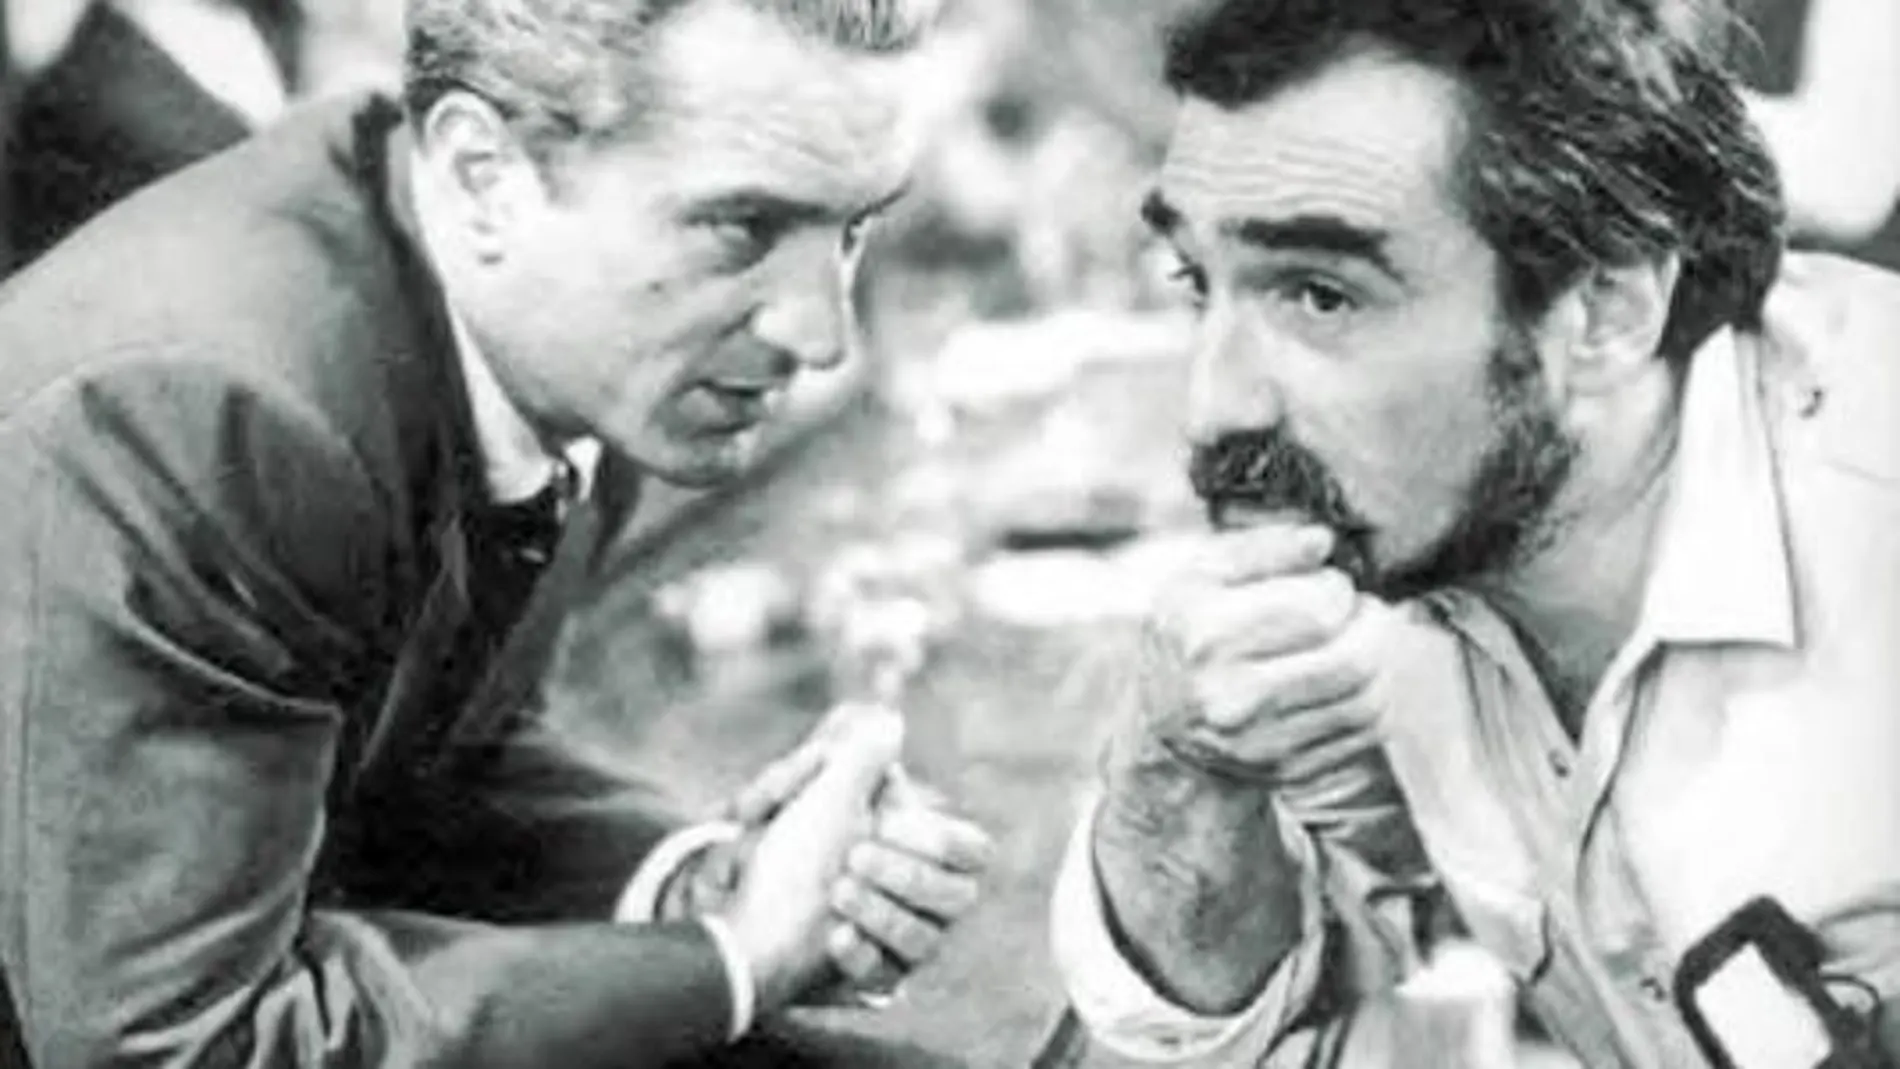 Cinco años después, Scorsese repitió con ambos en «Casino», otra de mafia.